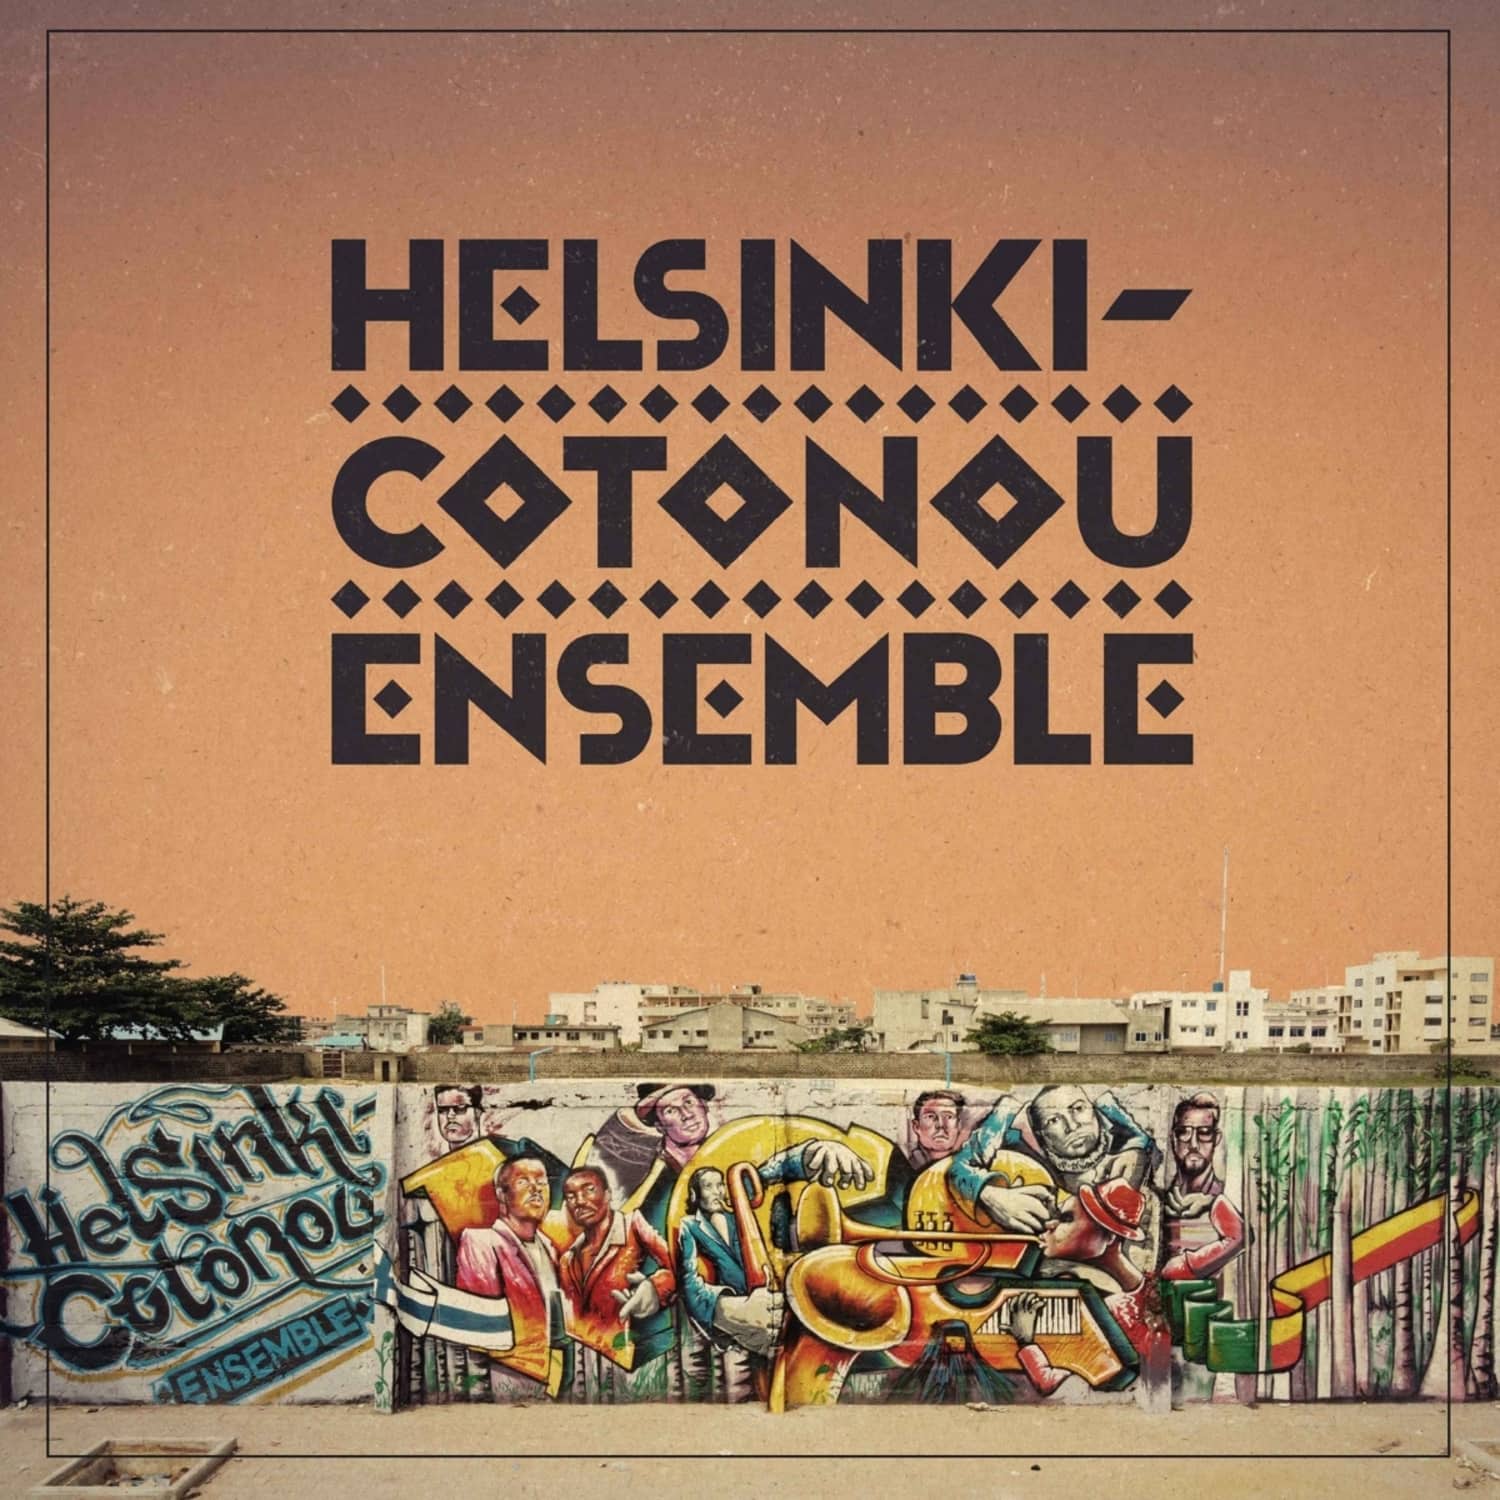 Helsinki Cotonou Ensemble - HELSINKI-COTONOU ENSEMBLE 